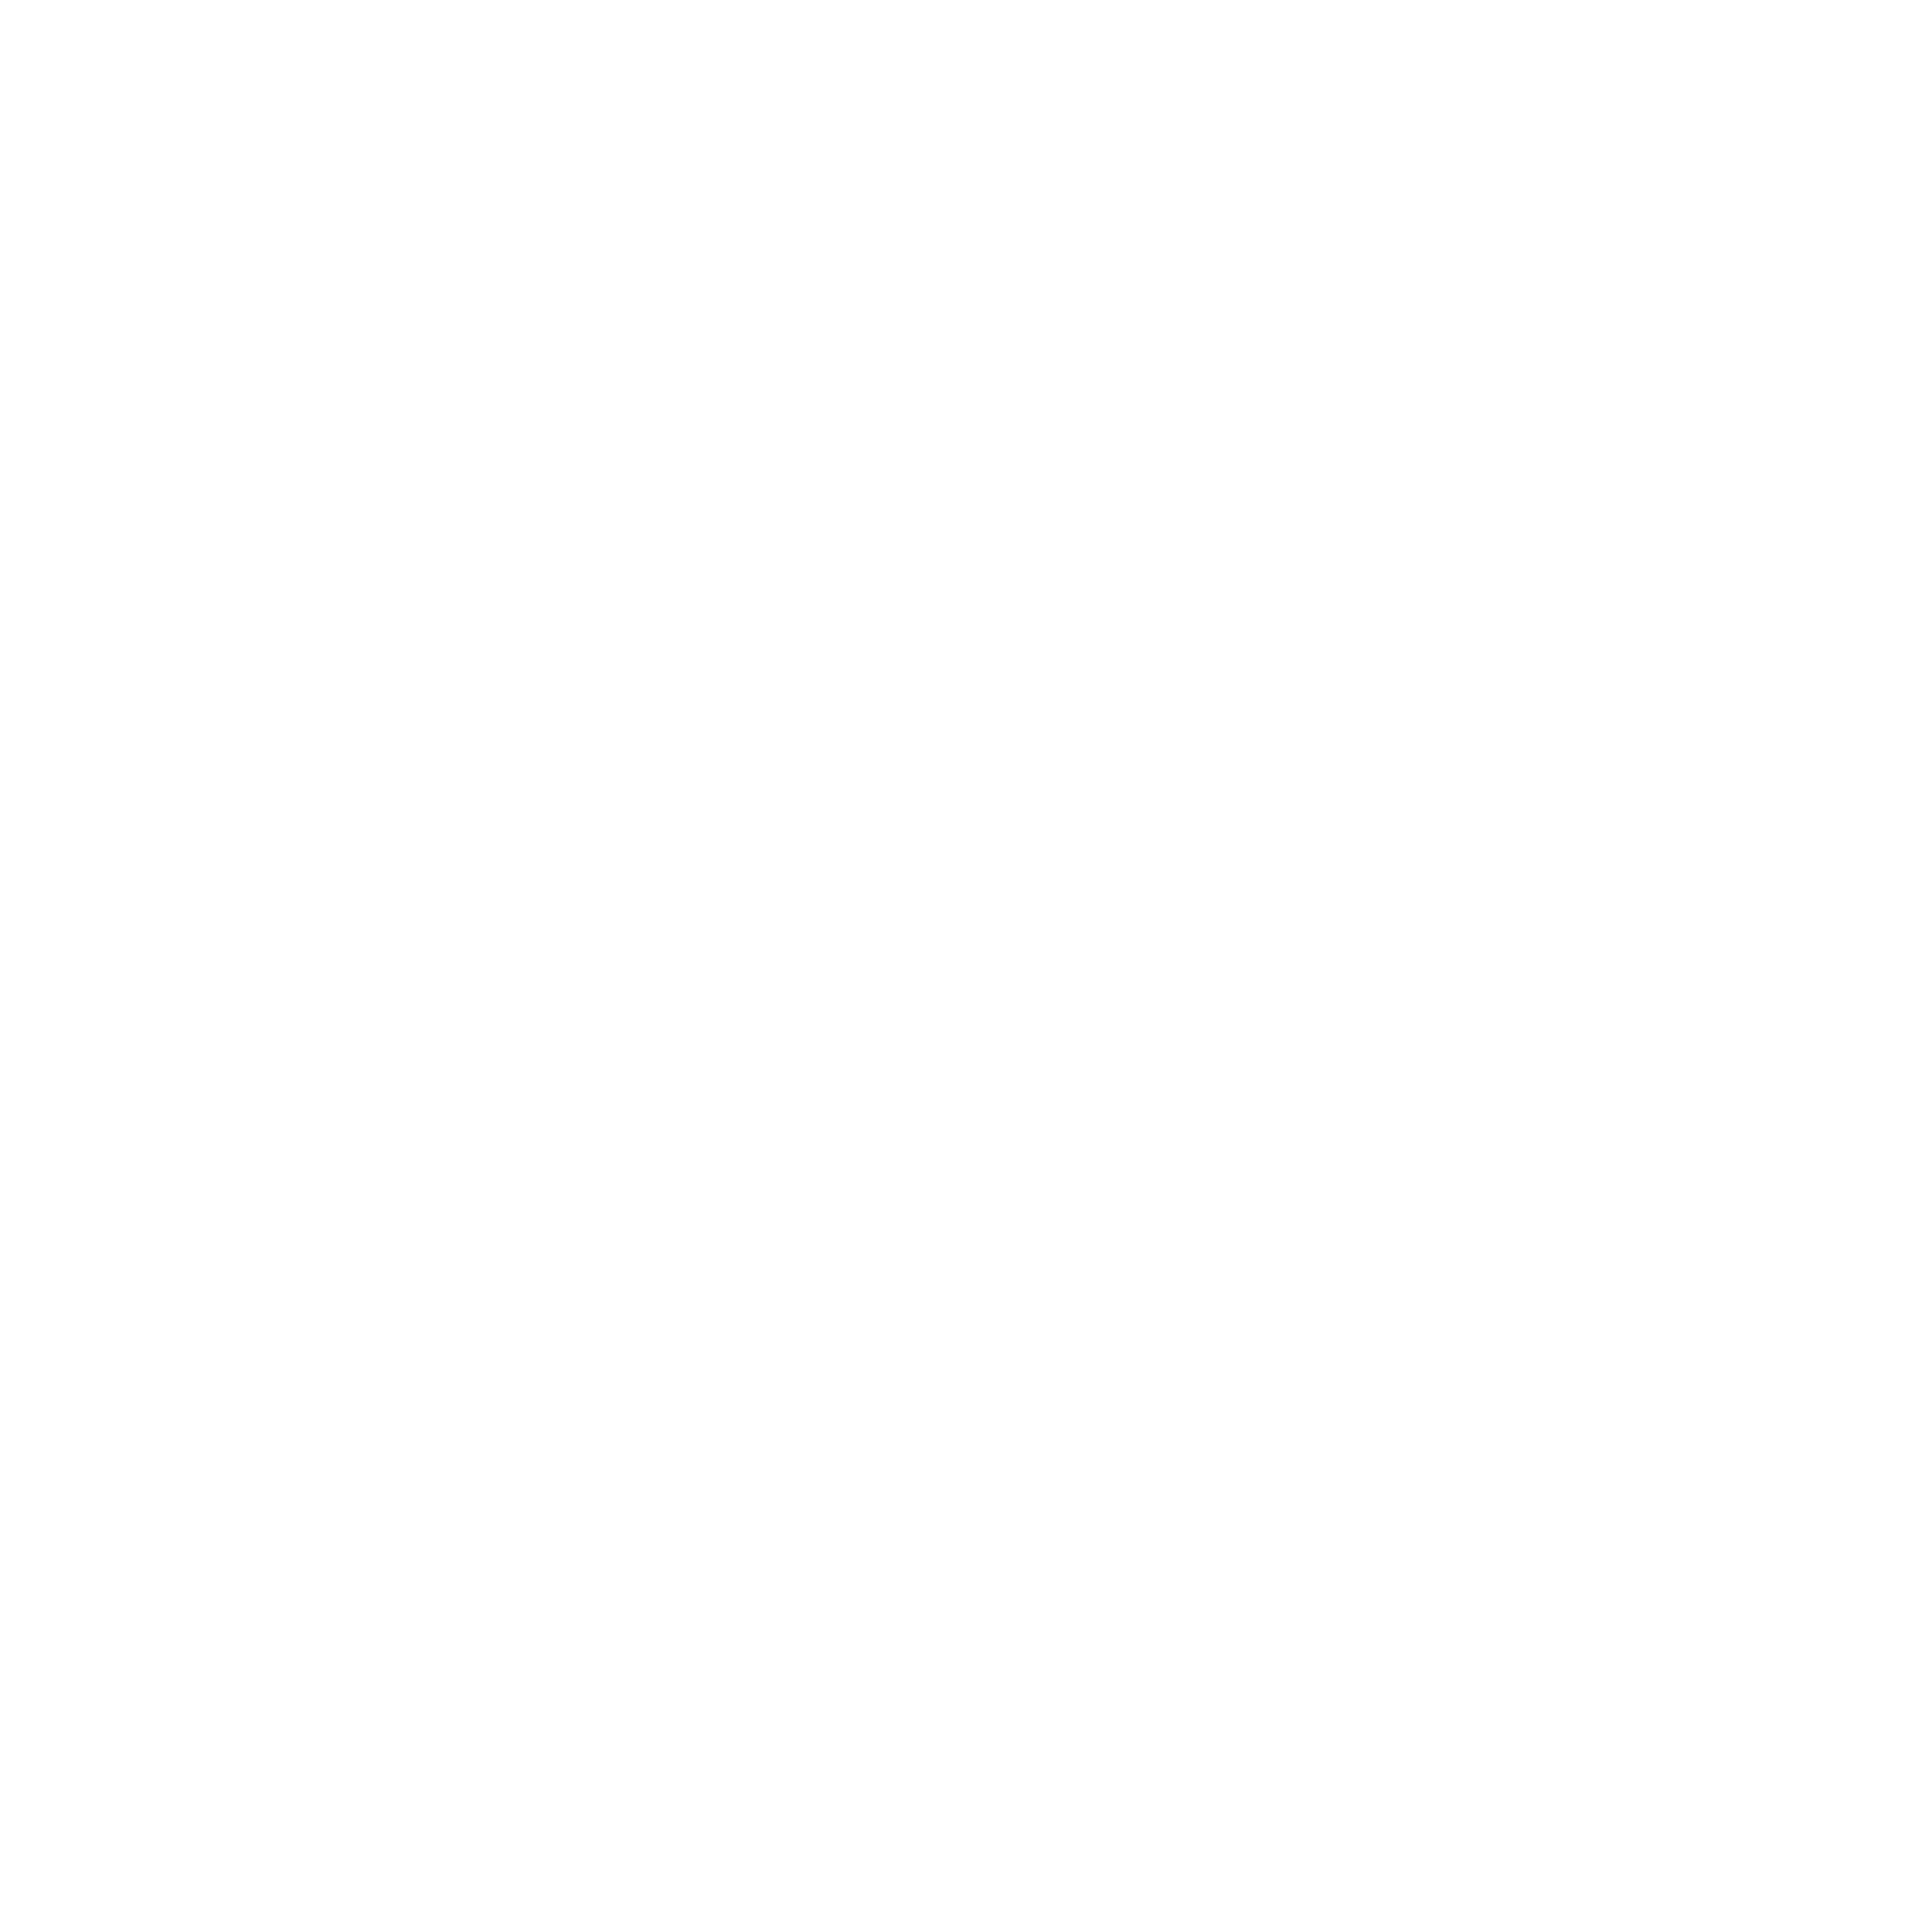 Анде Јанков – Ande Jankov